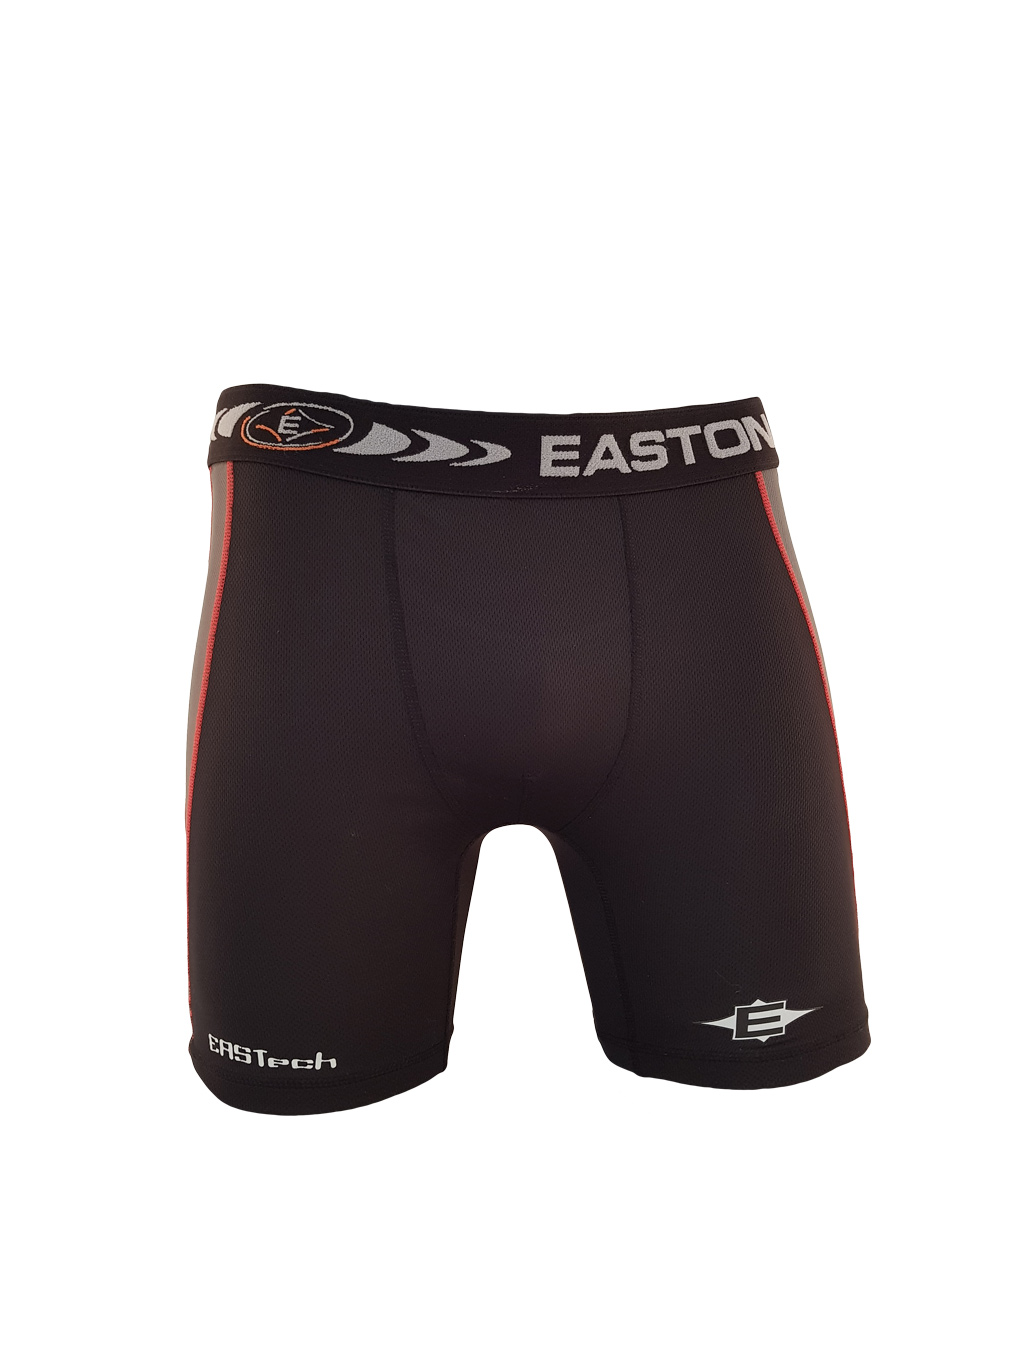 EASTON Eastech Compression Junior Underwear Pants, Ice Hockey Underwear ...